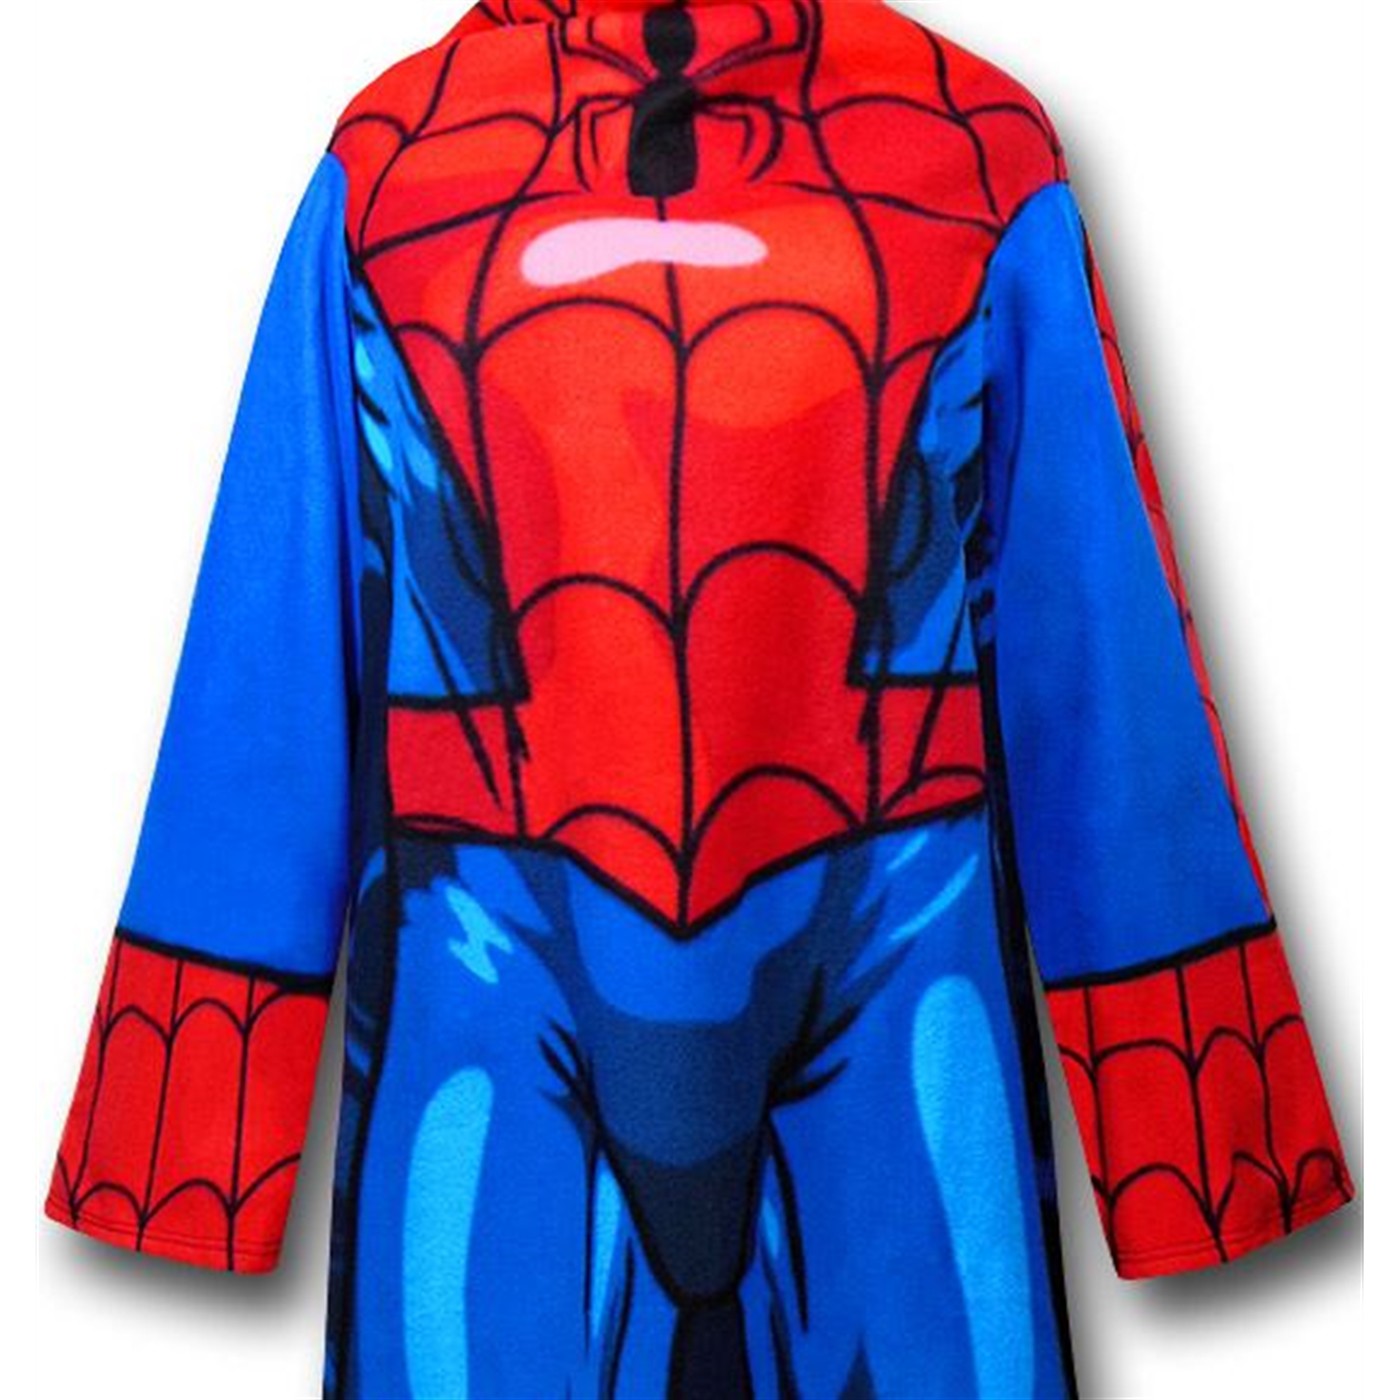 Spiderman Heroic Pose on Blue Snuggy Sleeved Blanket